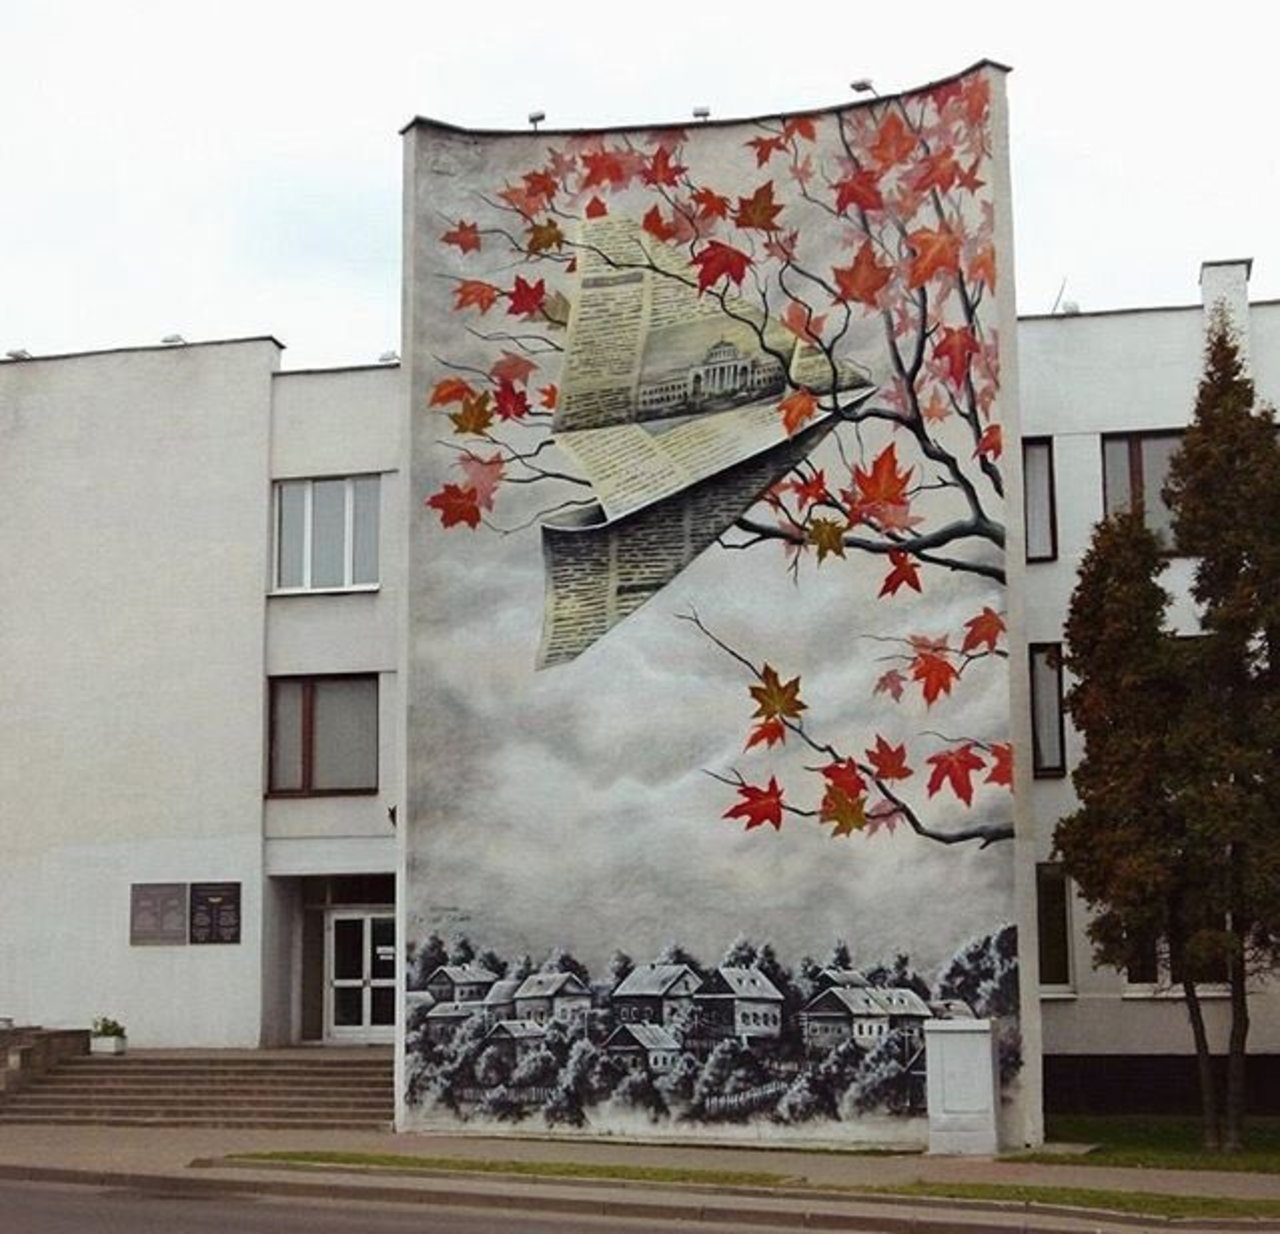 RT @GoogleStreetArt: New Street Art by MUTUS in Belarus 

#art #graffiti #mural #streetart https://t.co/dLARj9bvJ8